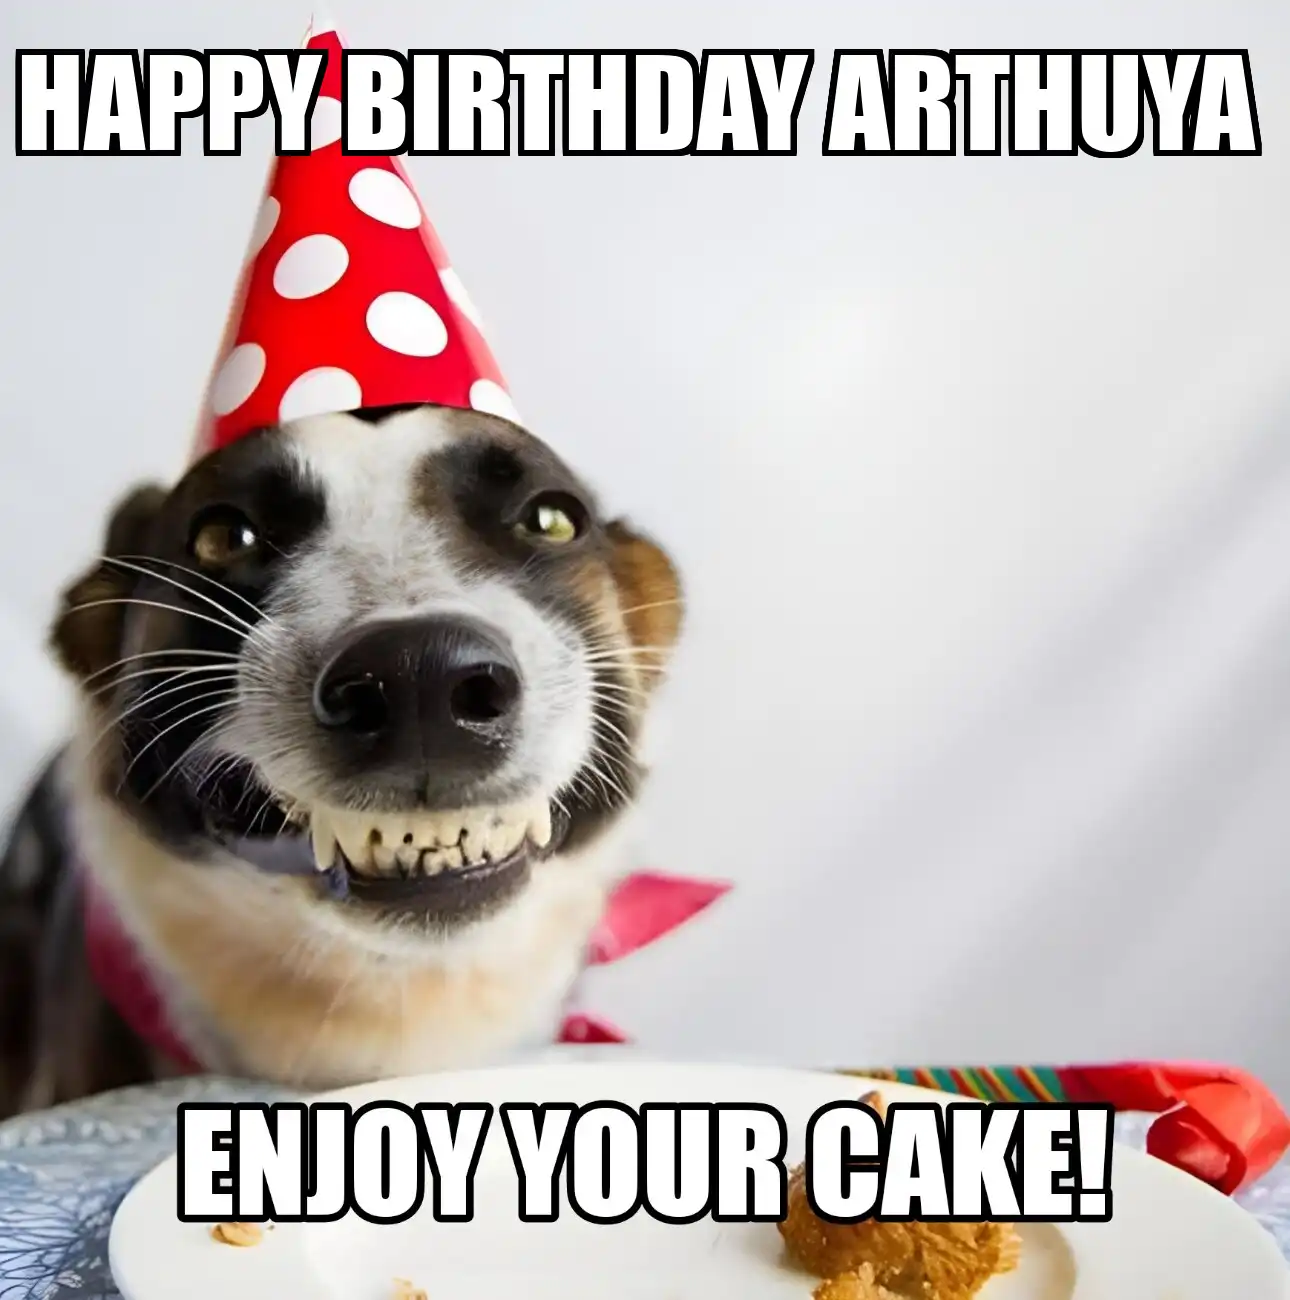 Happy Birthday Arthuya Enjoy Your Cake Dog Meme